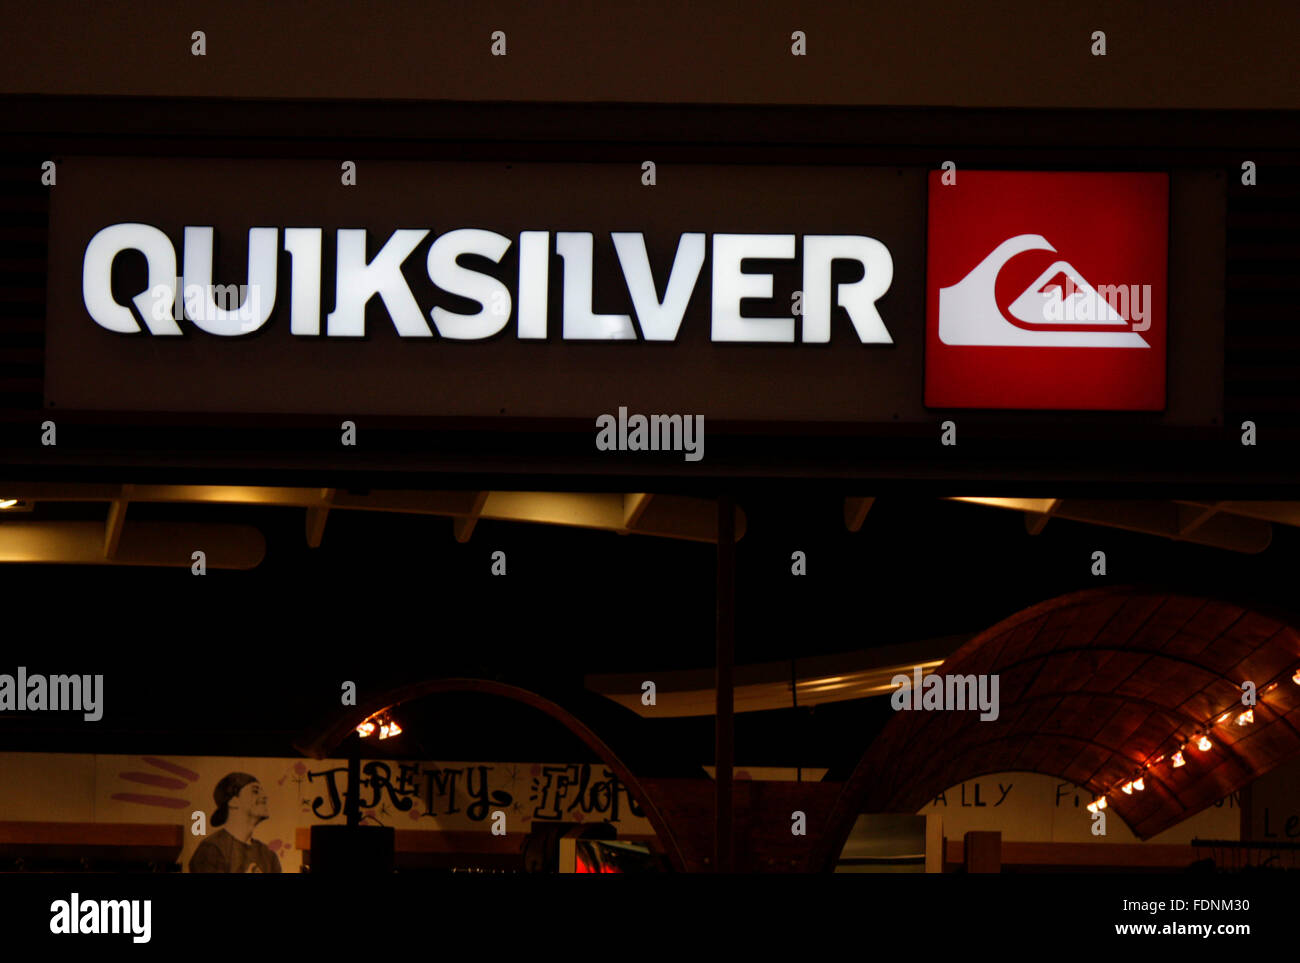 Markenname: 'Quicksilver', Berlin. Stock Photo